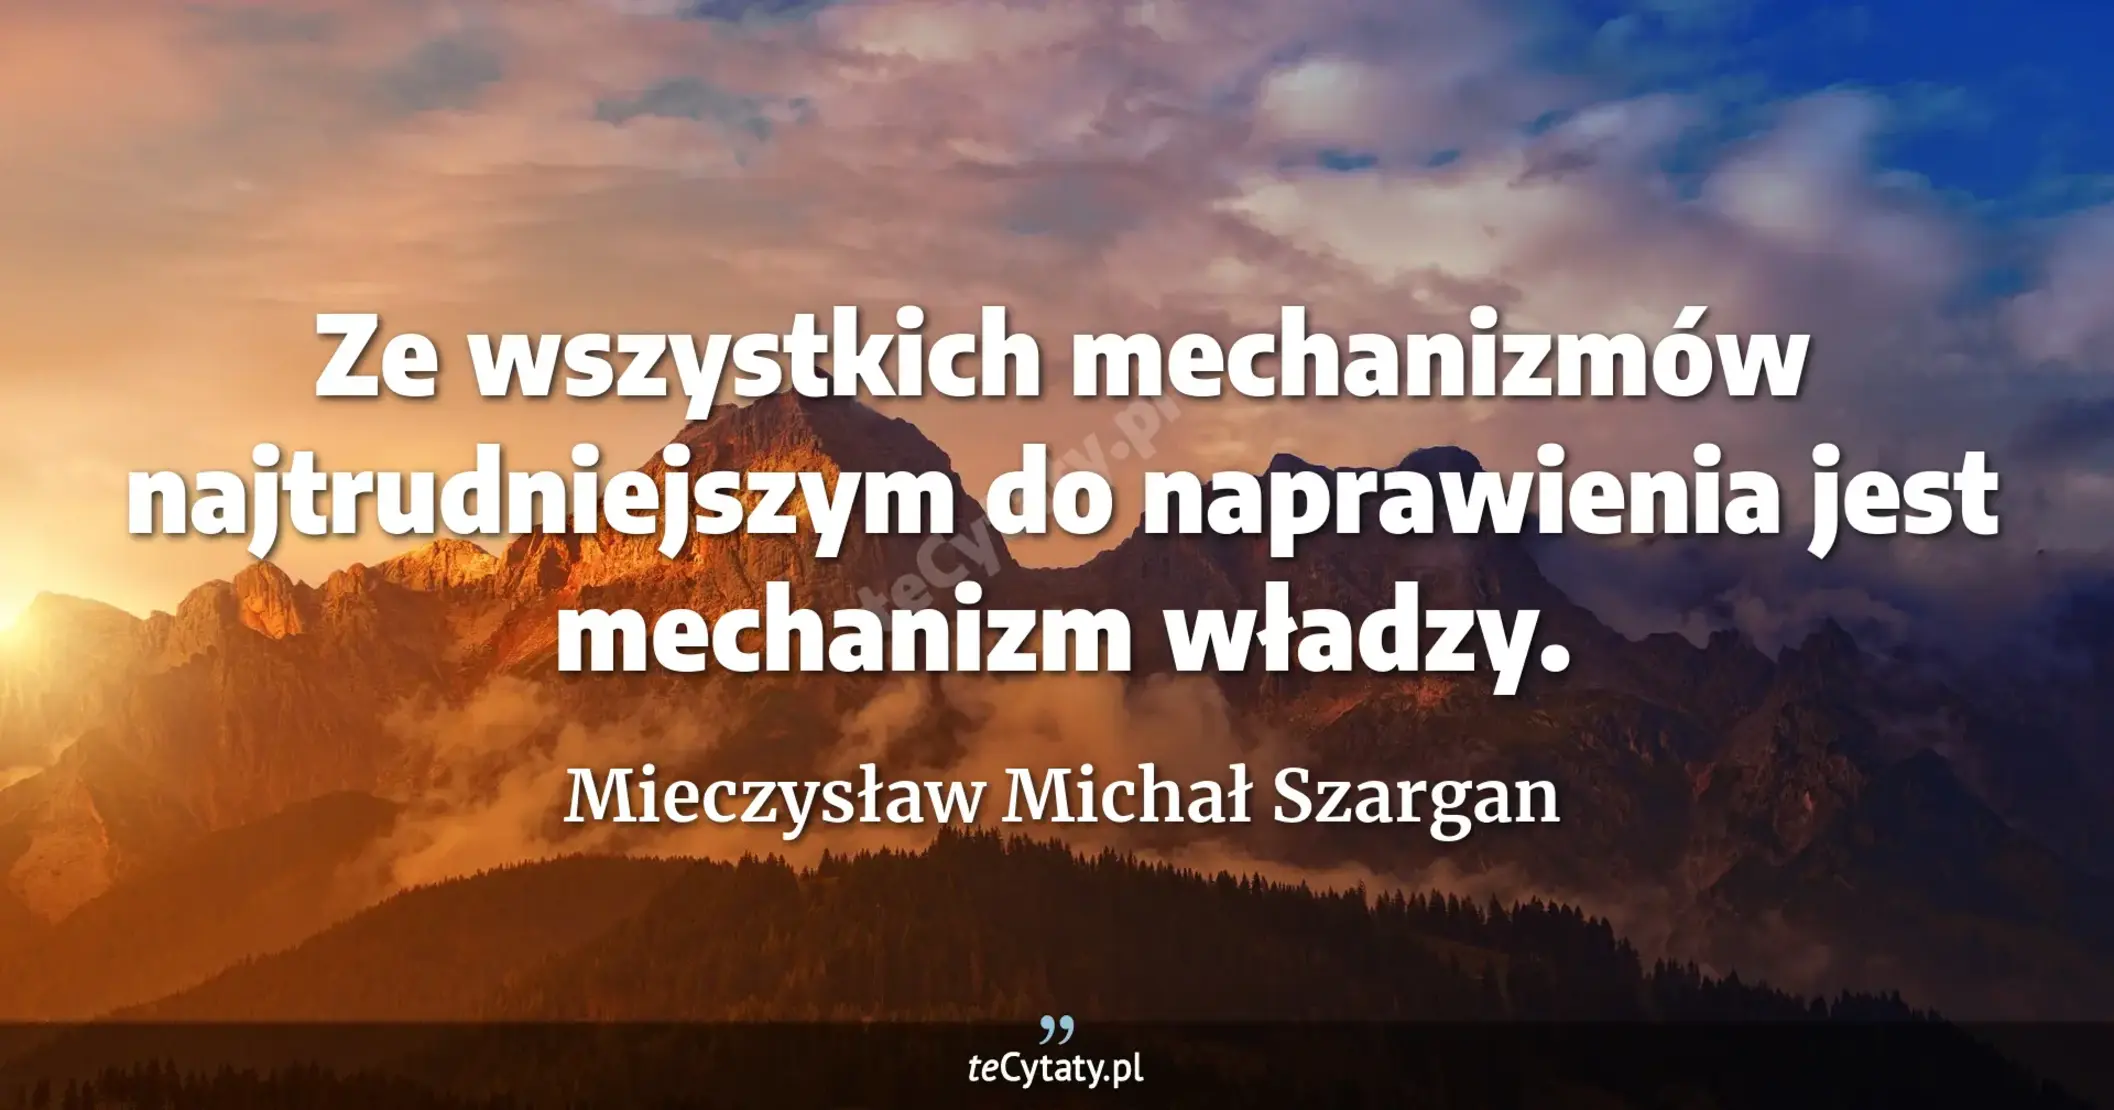 Ze wszystkich mechanizmów najtrudniejszym do naprawienia jest mechanizm władzy. - Mieczysław Michał Szargan